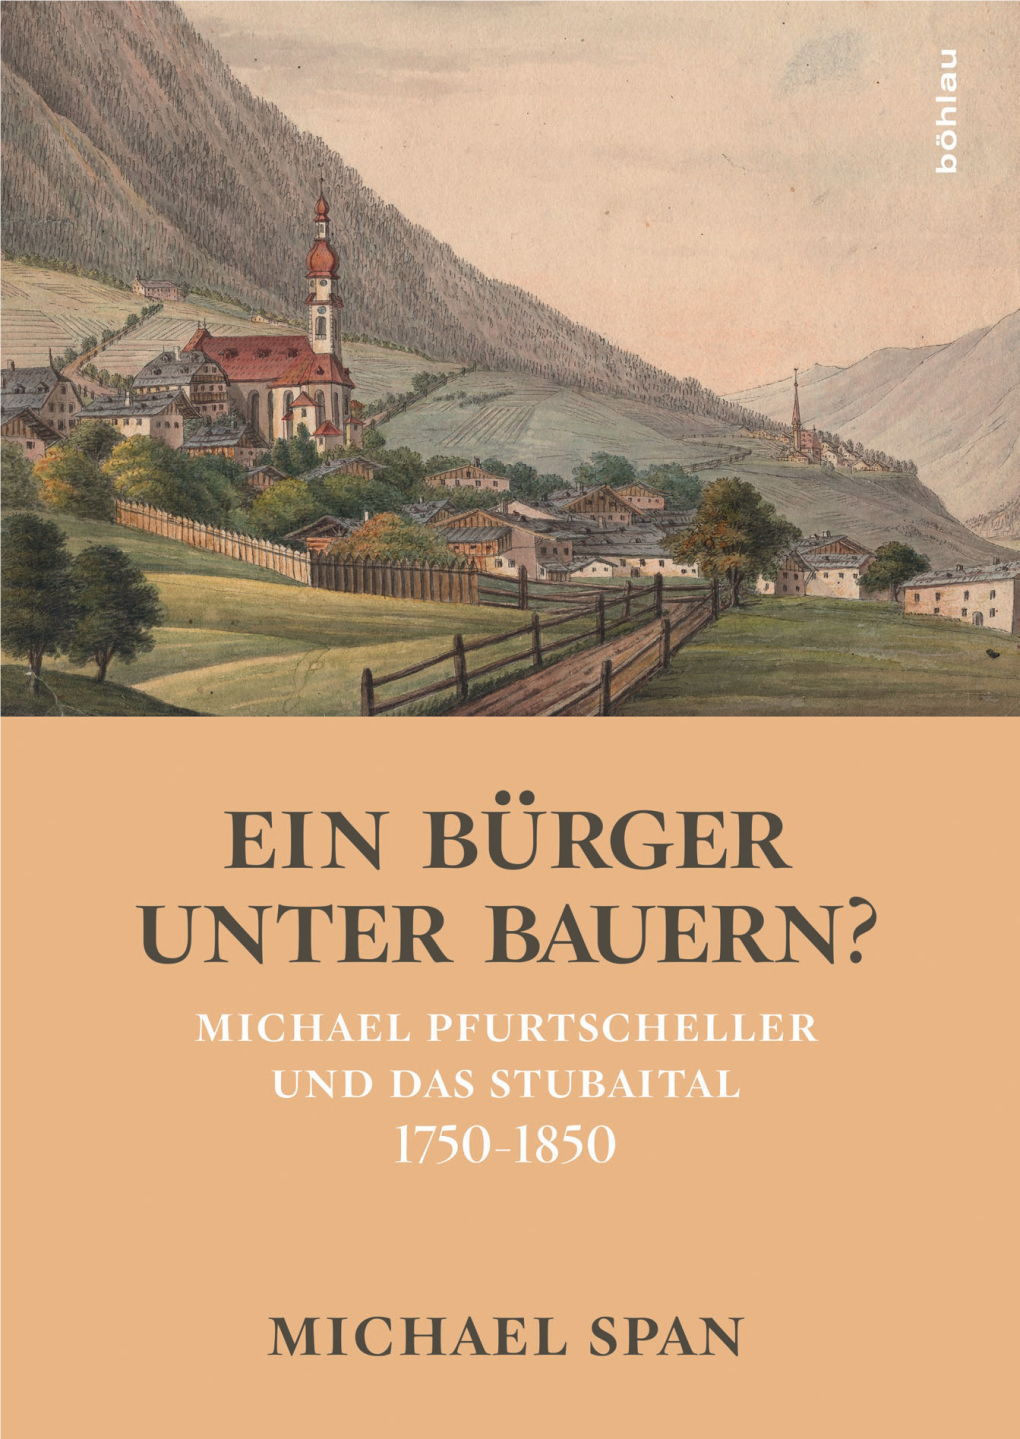 Michael Pfurtscheller Und Das Stubaital 1750-1850